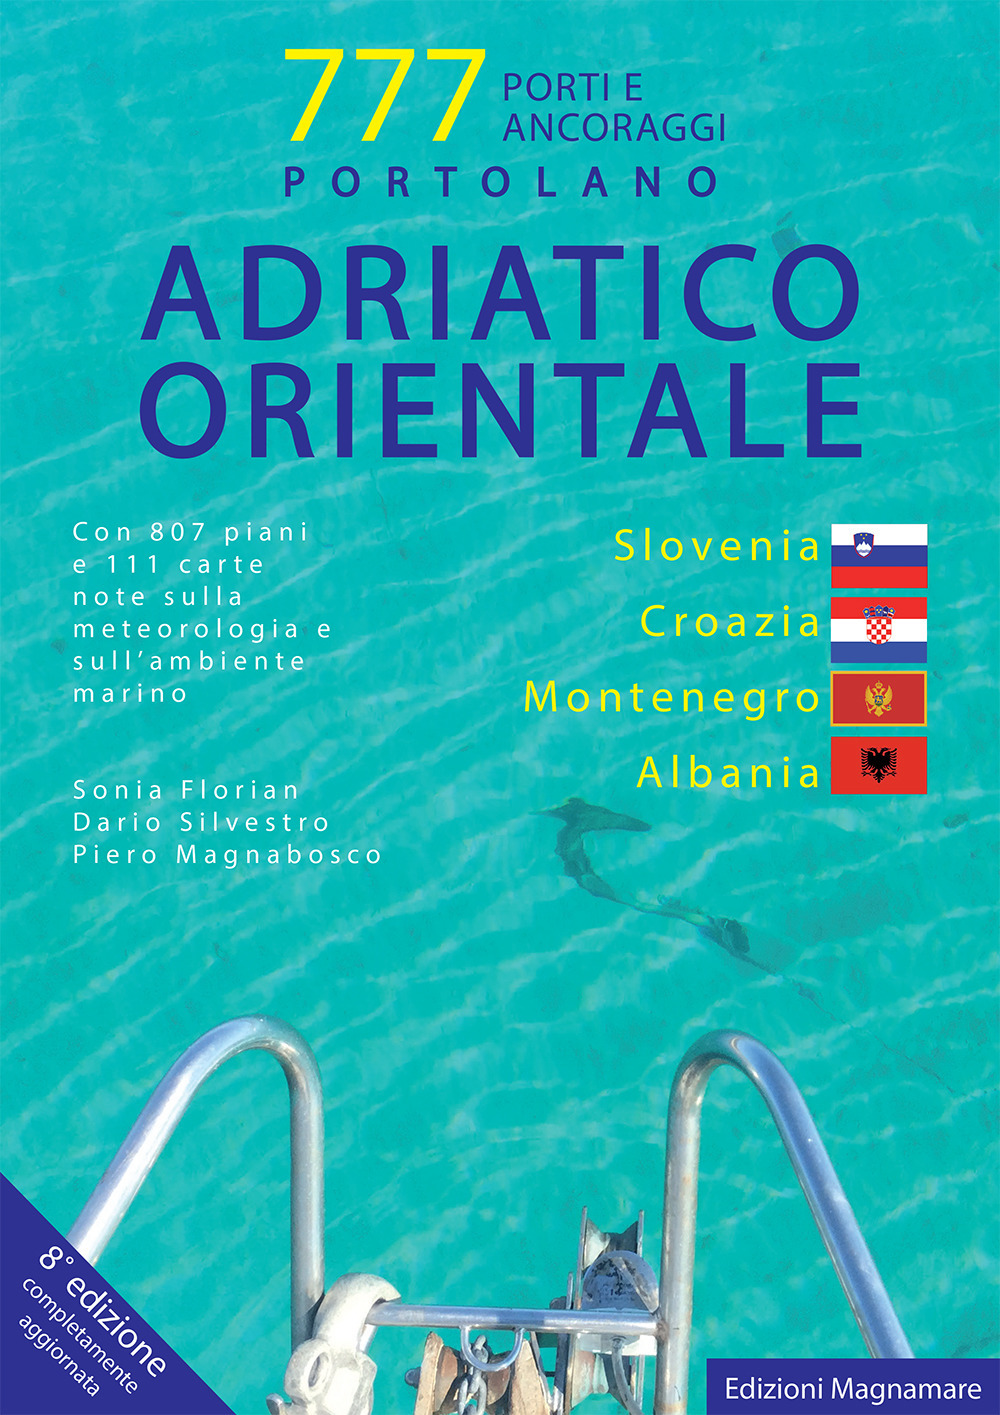 Adriatico orientale: Slovenia, Croazia, Montenegro, Albania. Portolano. 777 porti e ancoraggi